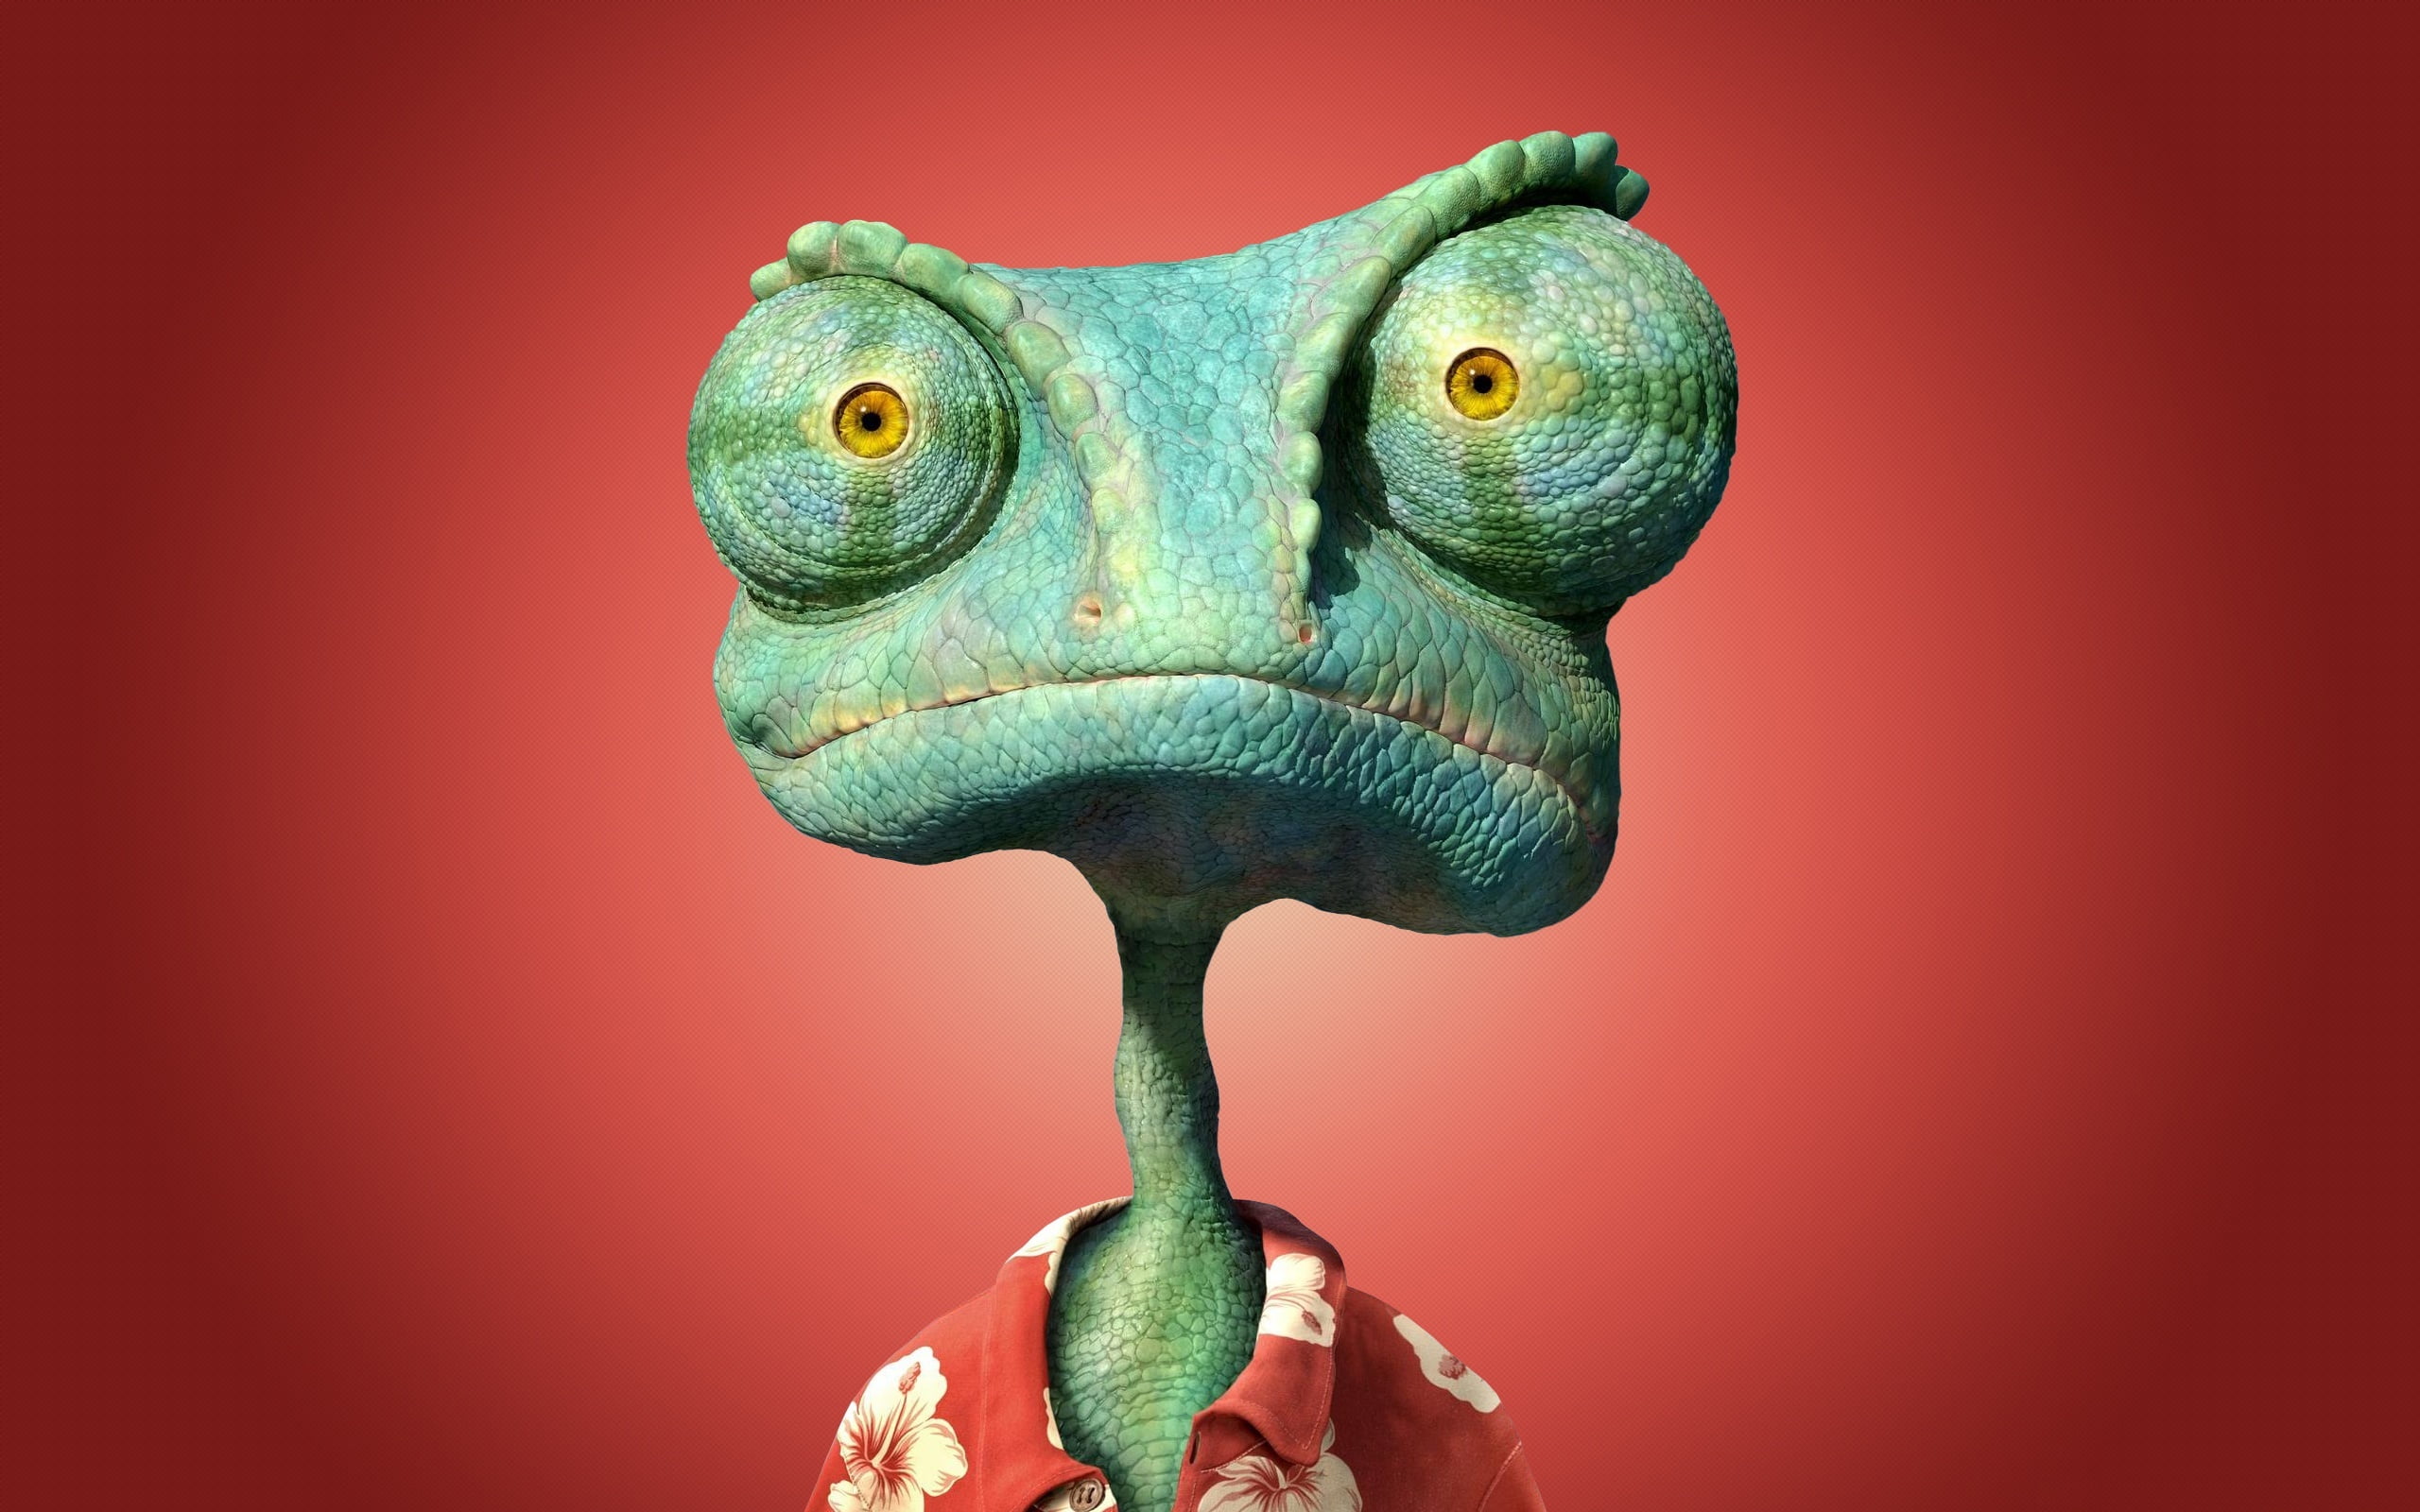 Ringo digital wallpaper, chameleon, Rango, animal, alien, monster - Fictional Character